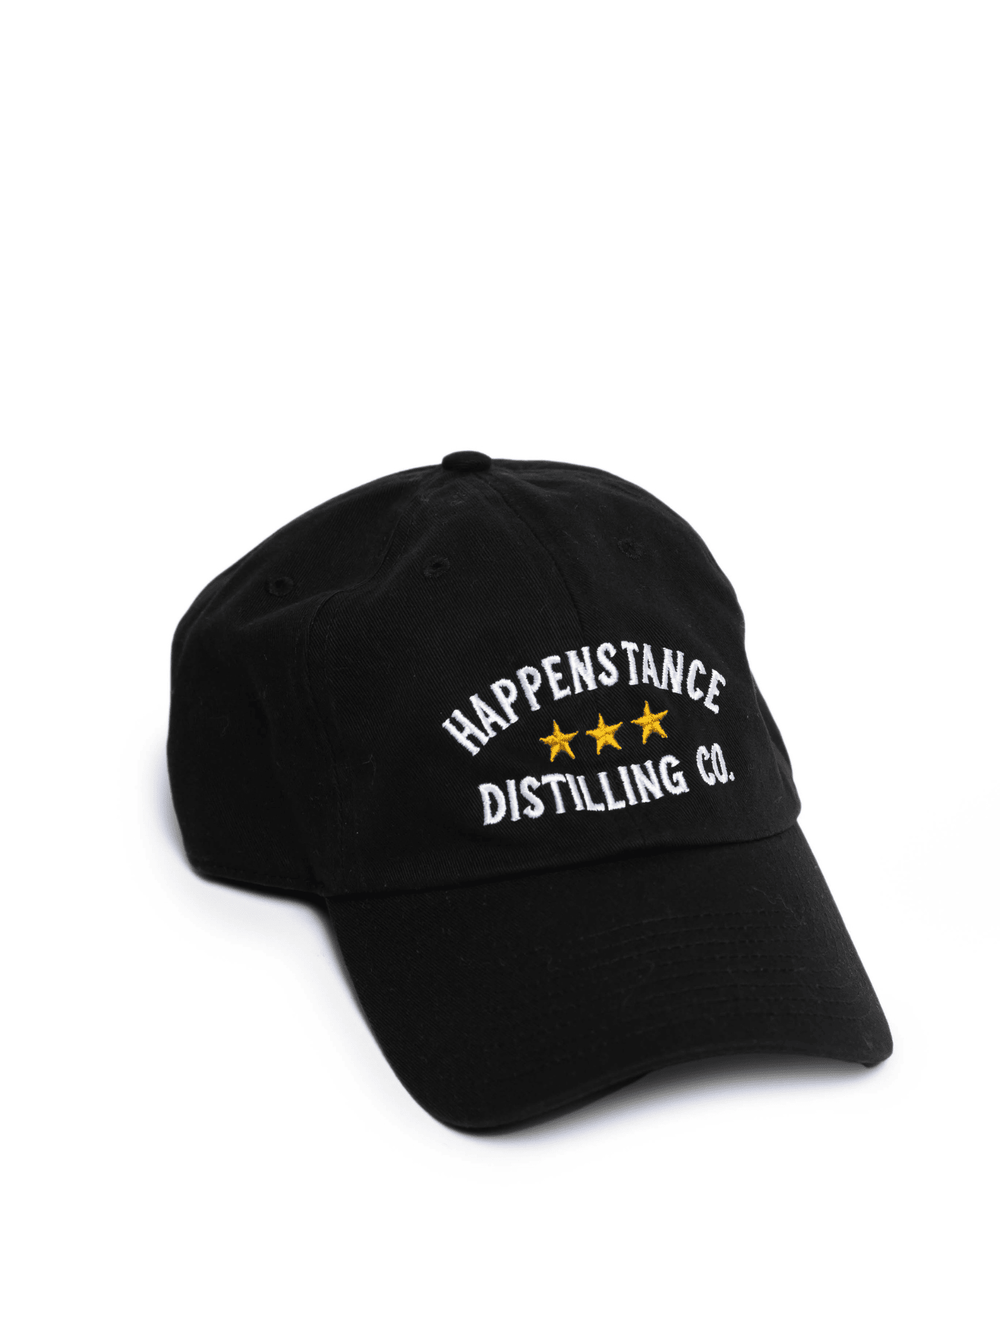 Happenstance Distilling Co Hat